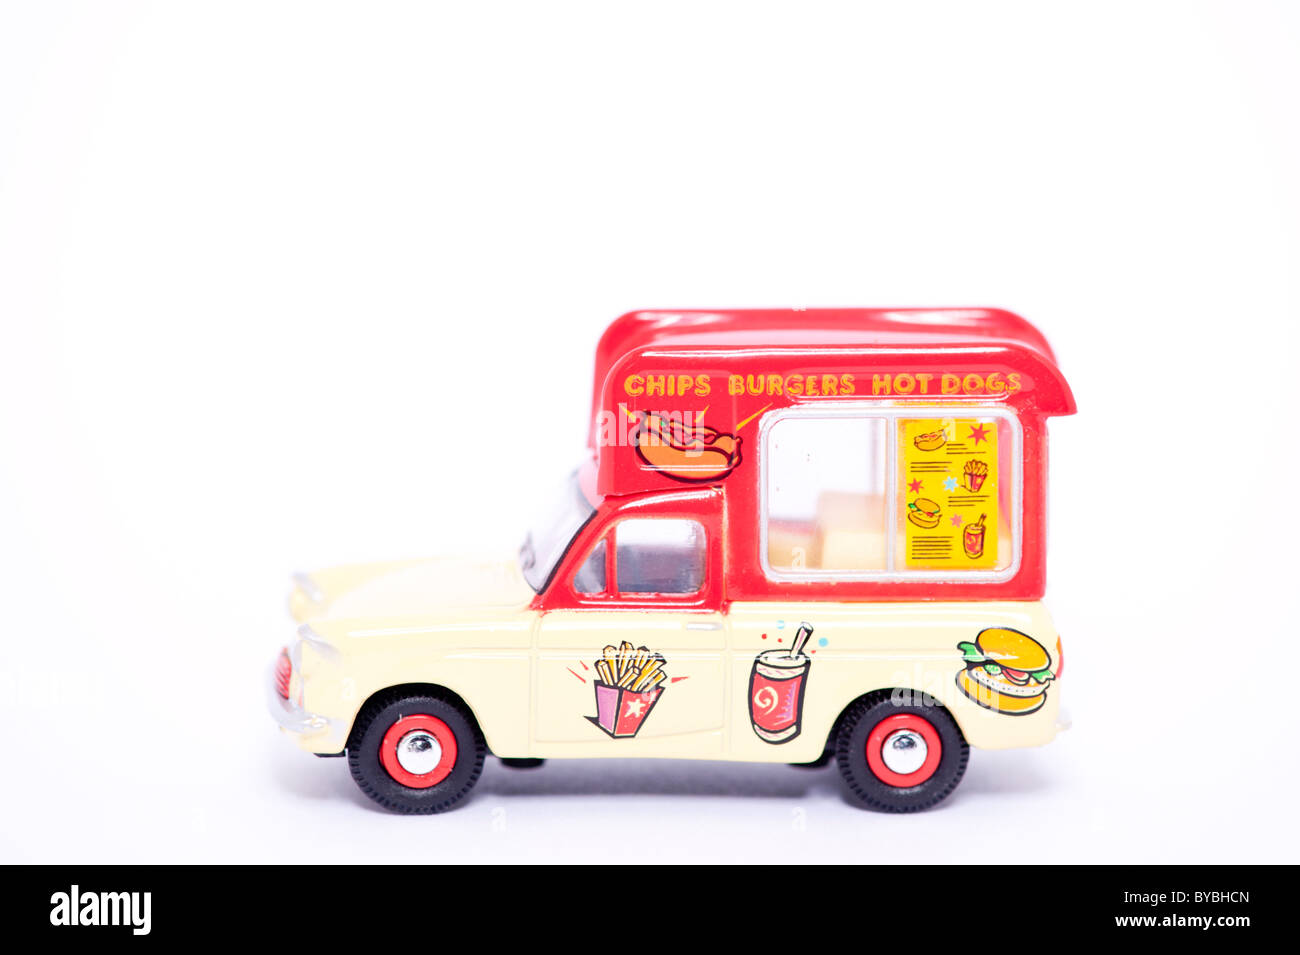 Ein Spielzeugmodell-chips, Burger und Hot Dogs van auf weißem Hintergrund Stockfoto